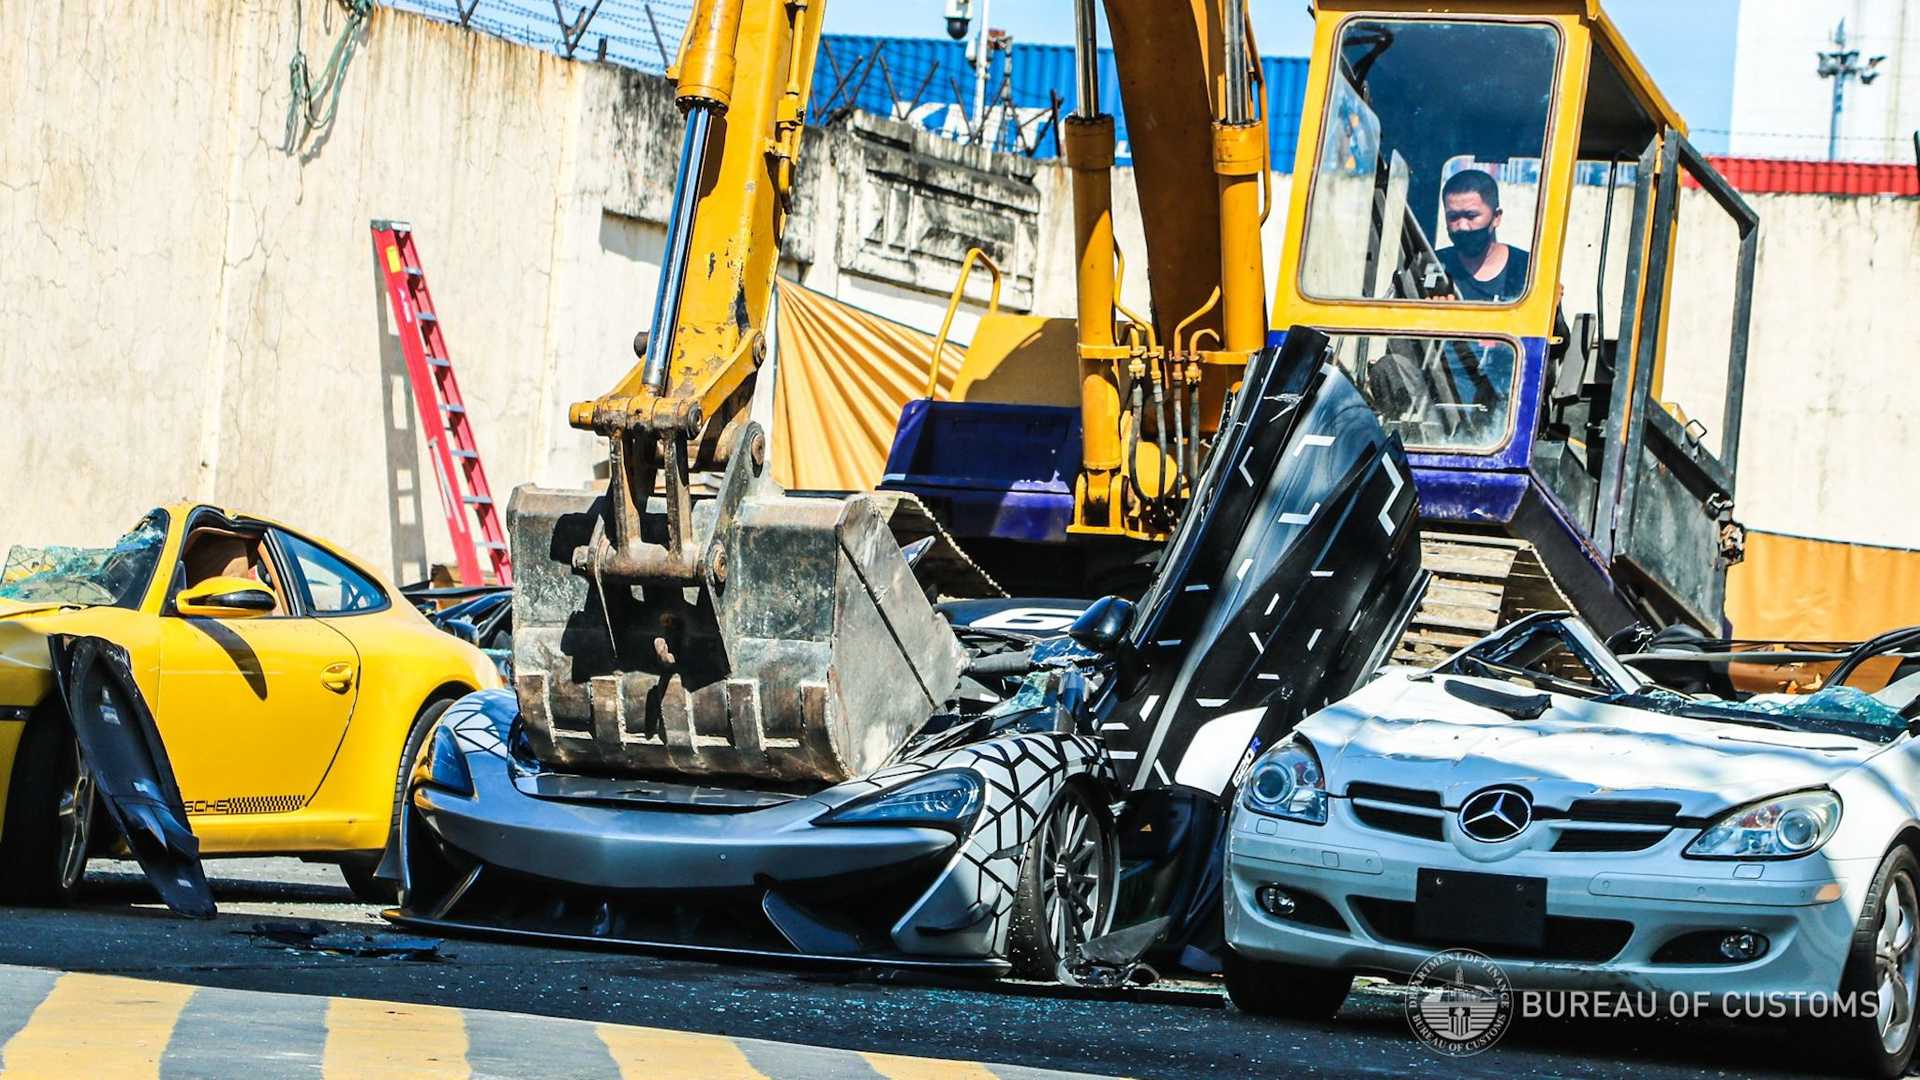 الفلبين تدمر 21 سيارة بقيمة 4.1 مليون ريال لردع المهربين "فيديو" 1